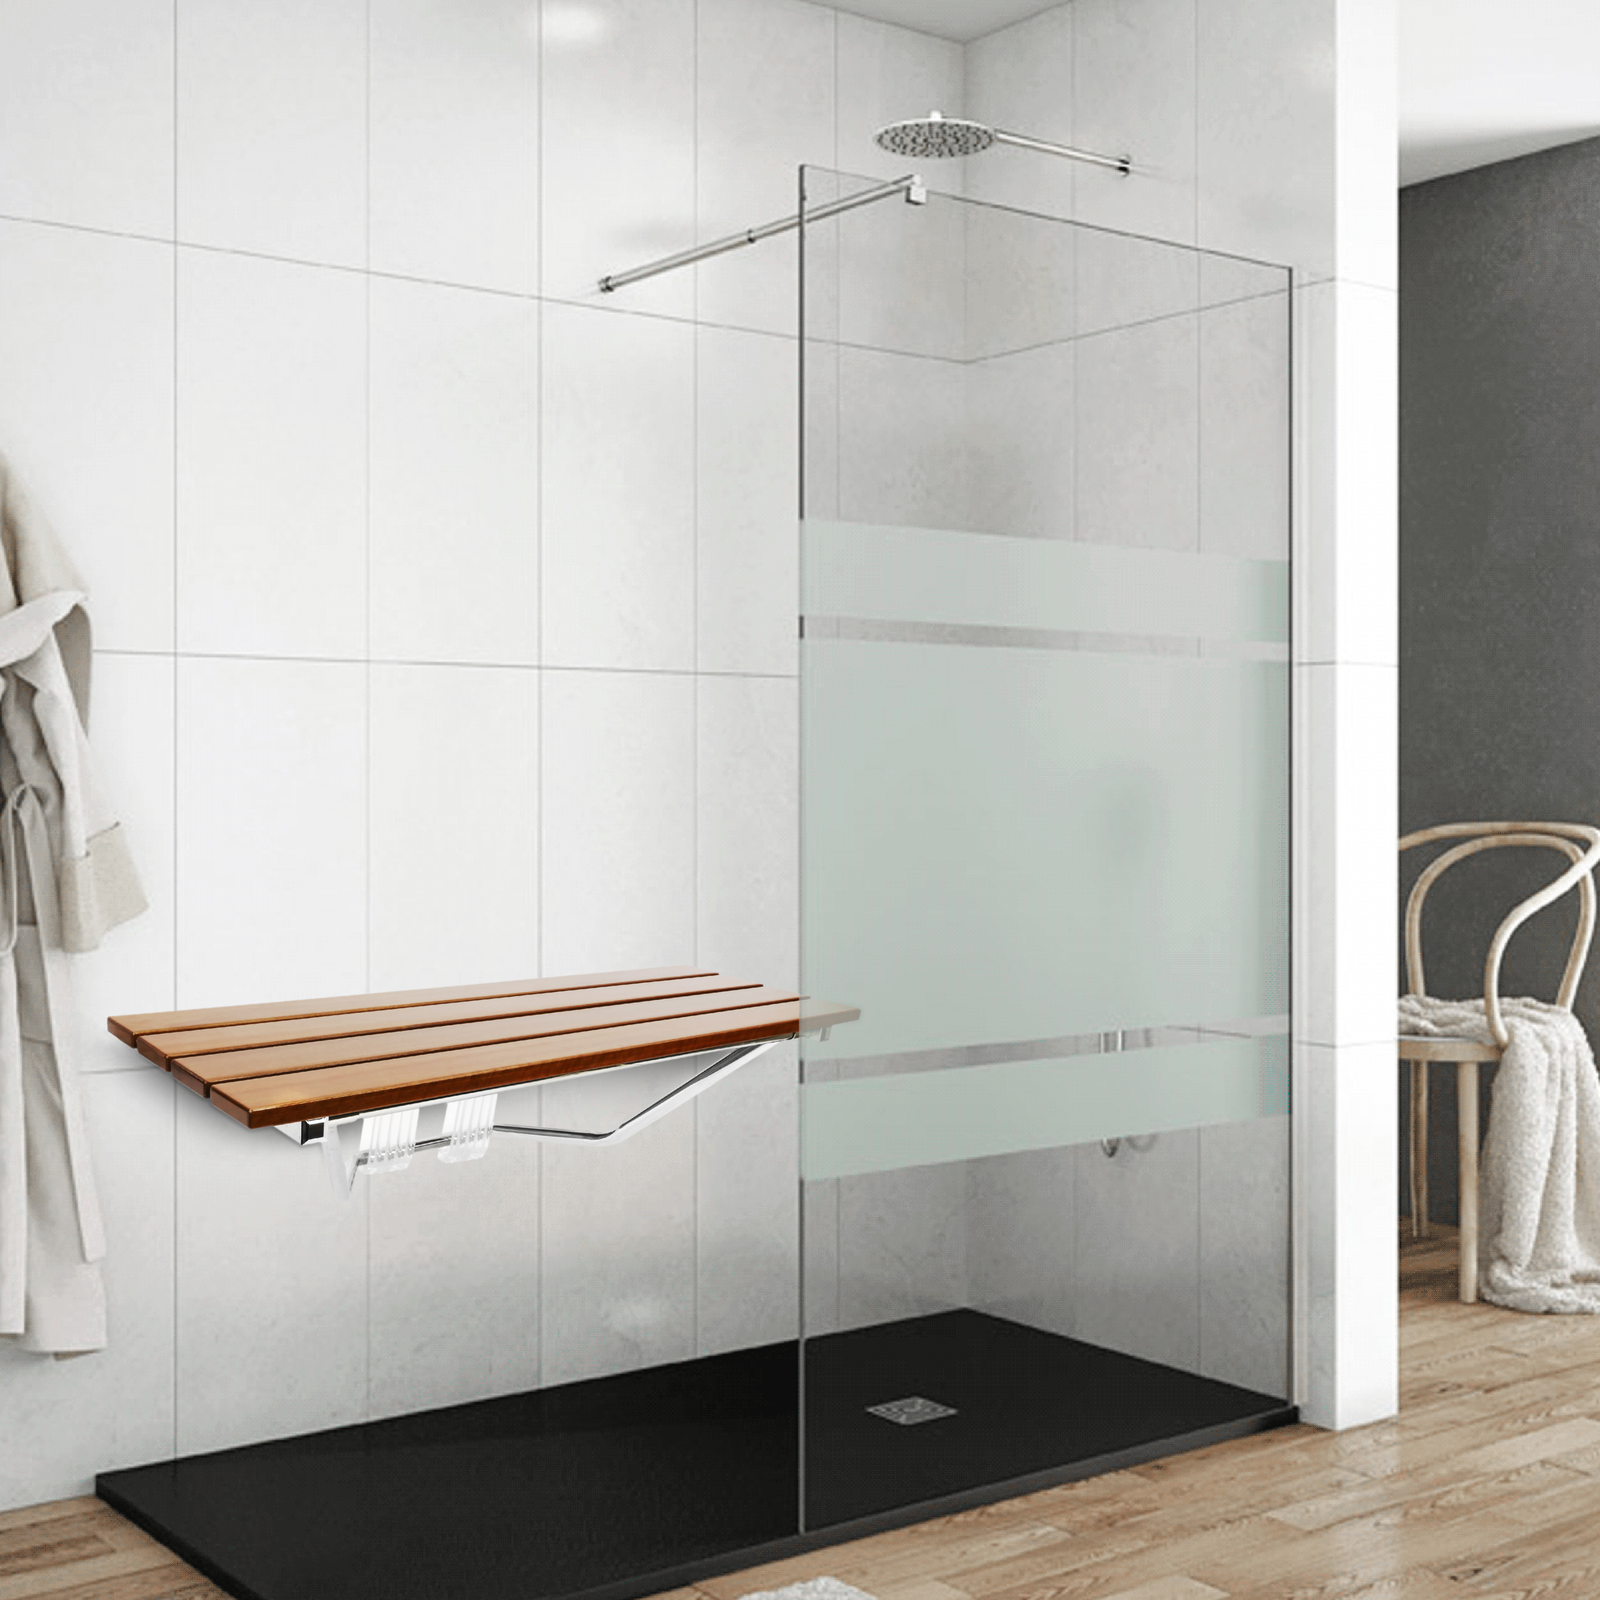  Banco de ducha de bambú en el interior del taburete de ducha  con estante de almacenamiento de espacio eficiente, sillas de baño de  ducha, asientos de spa para baño, ideal para